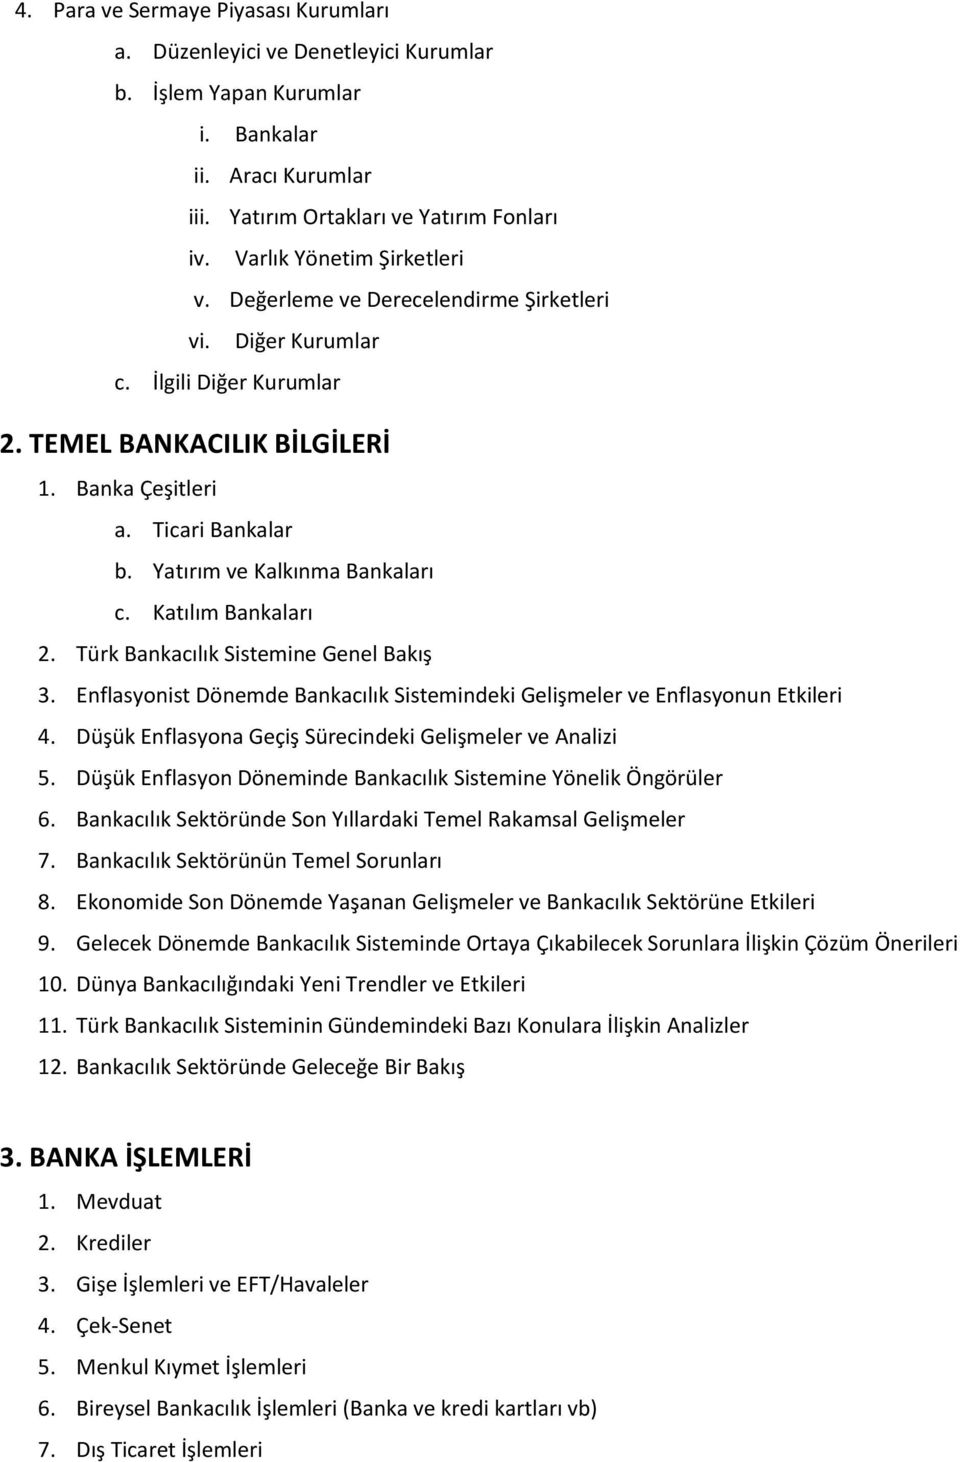 Yatırım ve Kalkınma Bankaları c. Katılım Bankaları 2. Türk Bankacılık Sistemine Genel Bakış 3. Enflasyonist Dönemde Bankacılık Sistemindeki Gelişmeler ve Enflasyonun Etkileri 4.